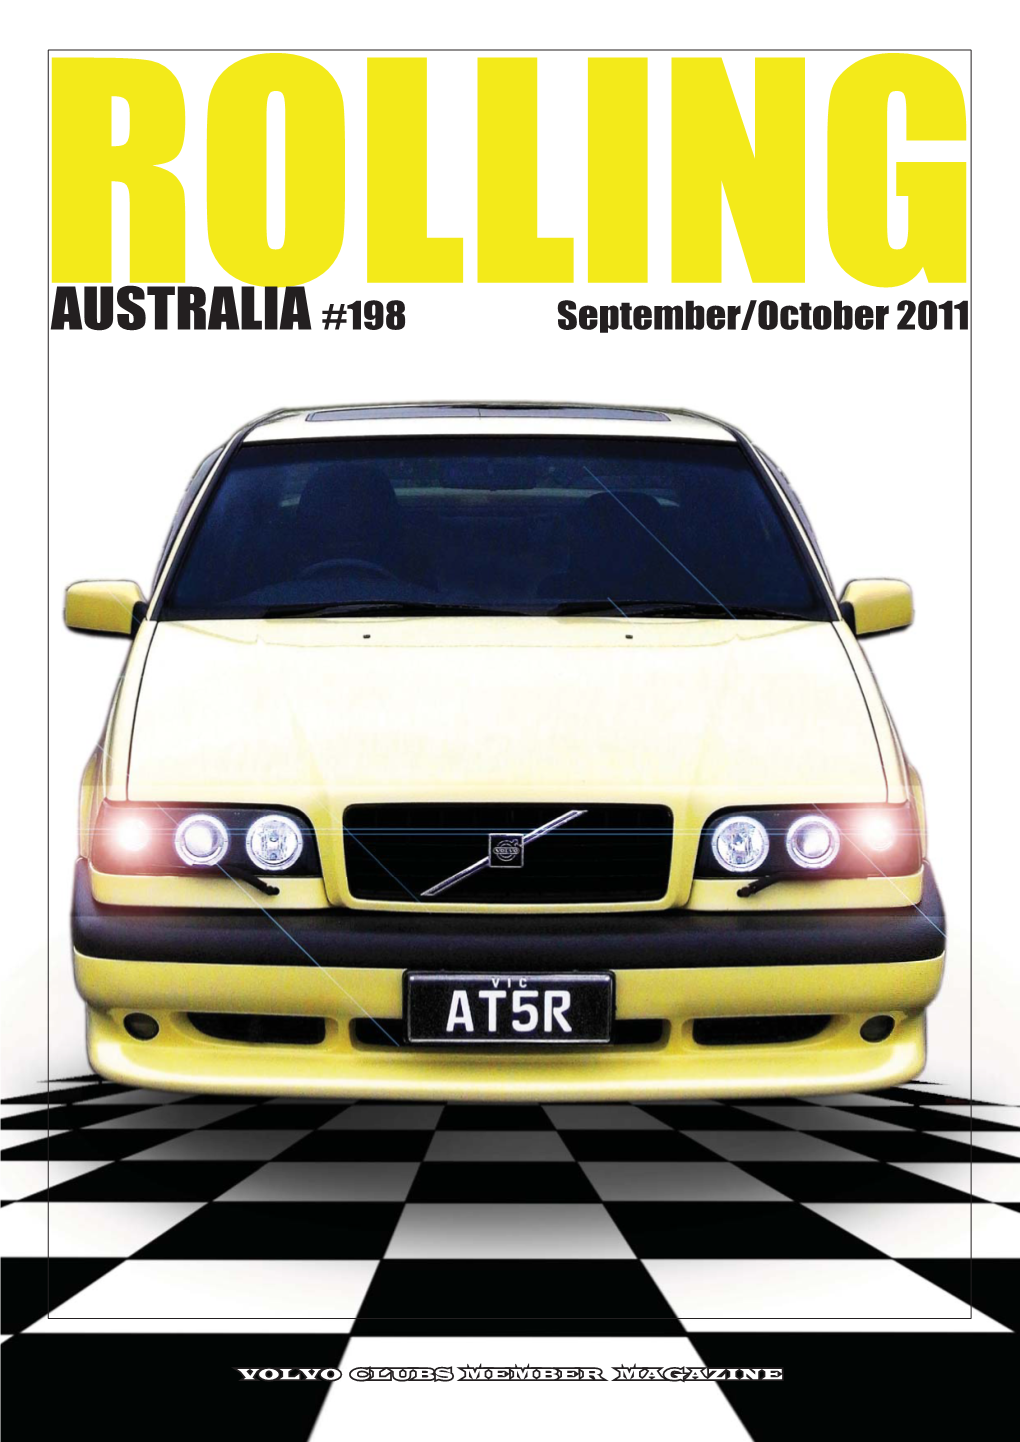 AUSTRALIA #198 September/October 2011